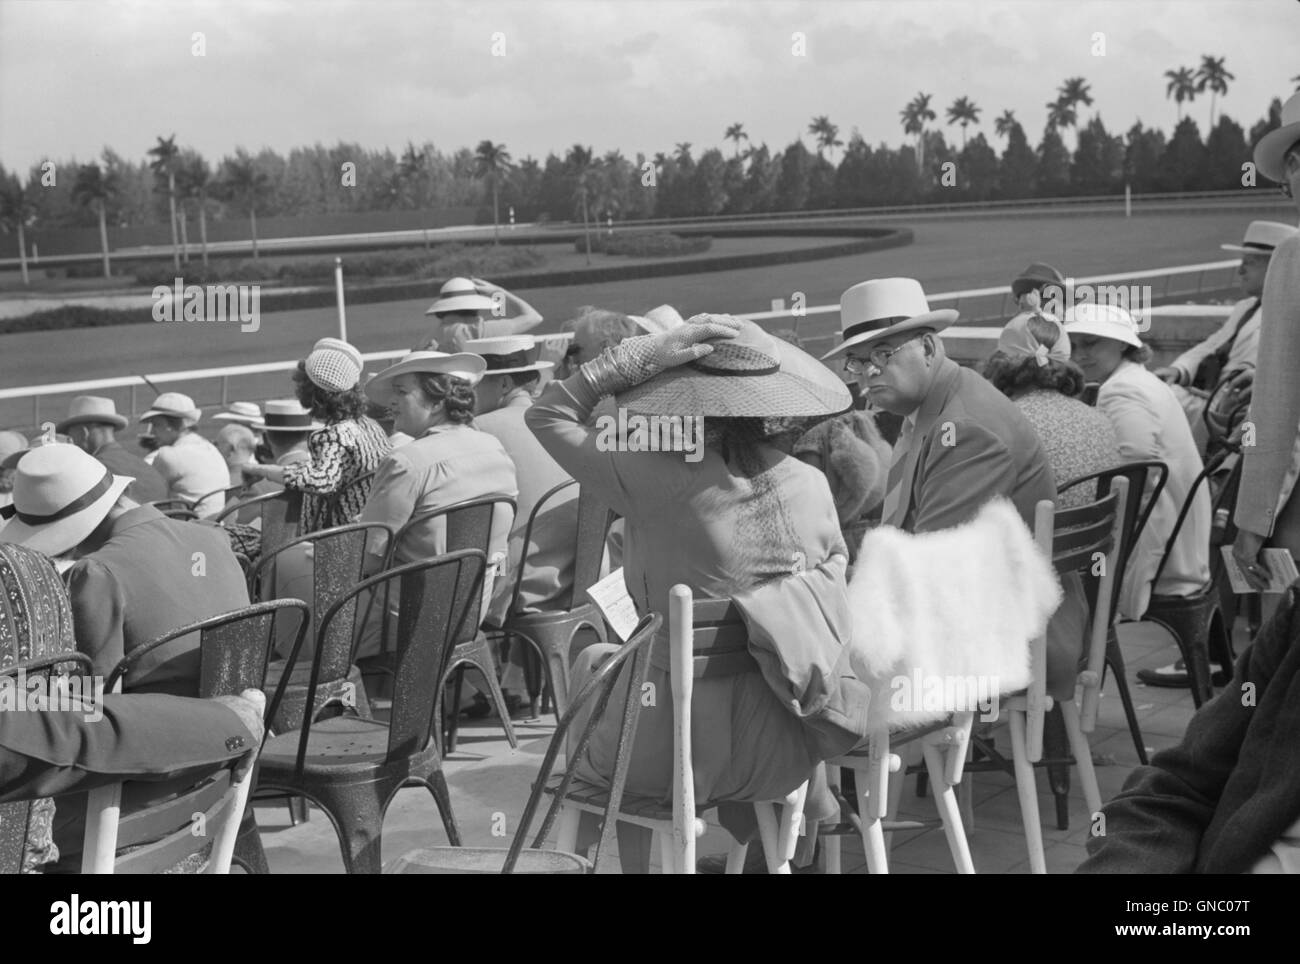 Gli spettatori a cavallo di razza, Hialeah Park, Miami, Florida, Stati Uniti d'America, Marion Post Wolcott per la Farm Security Administration, Marzo 1939 Foto Stock